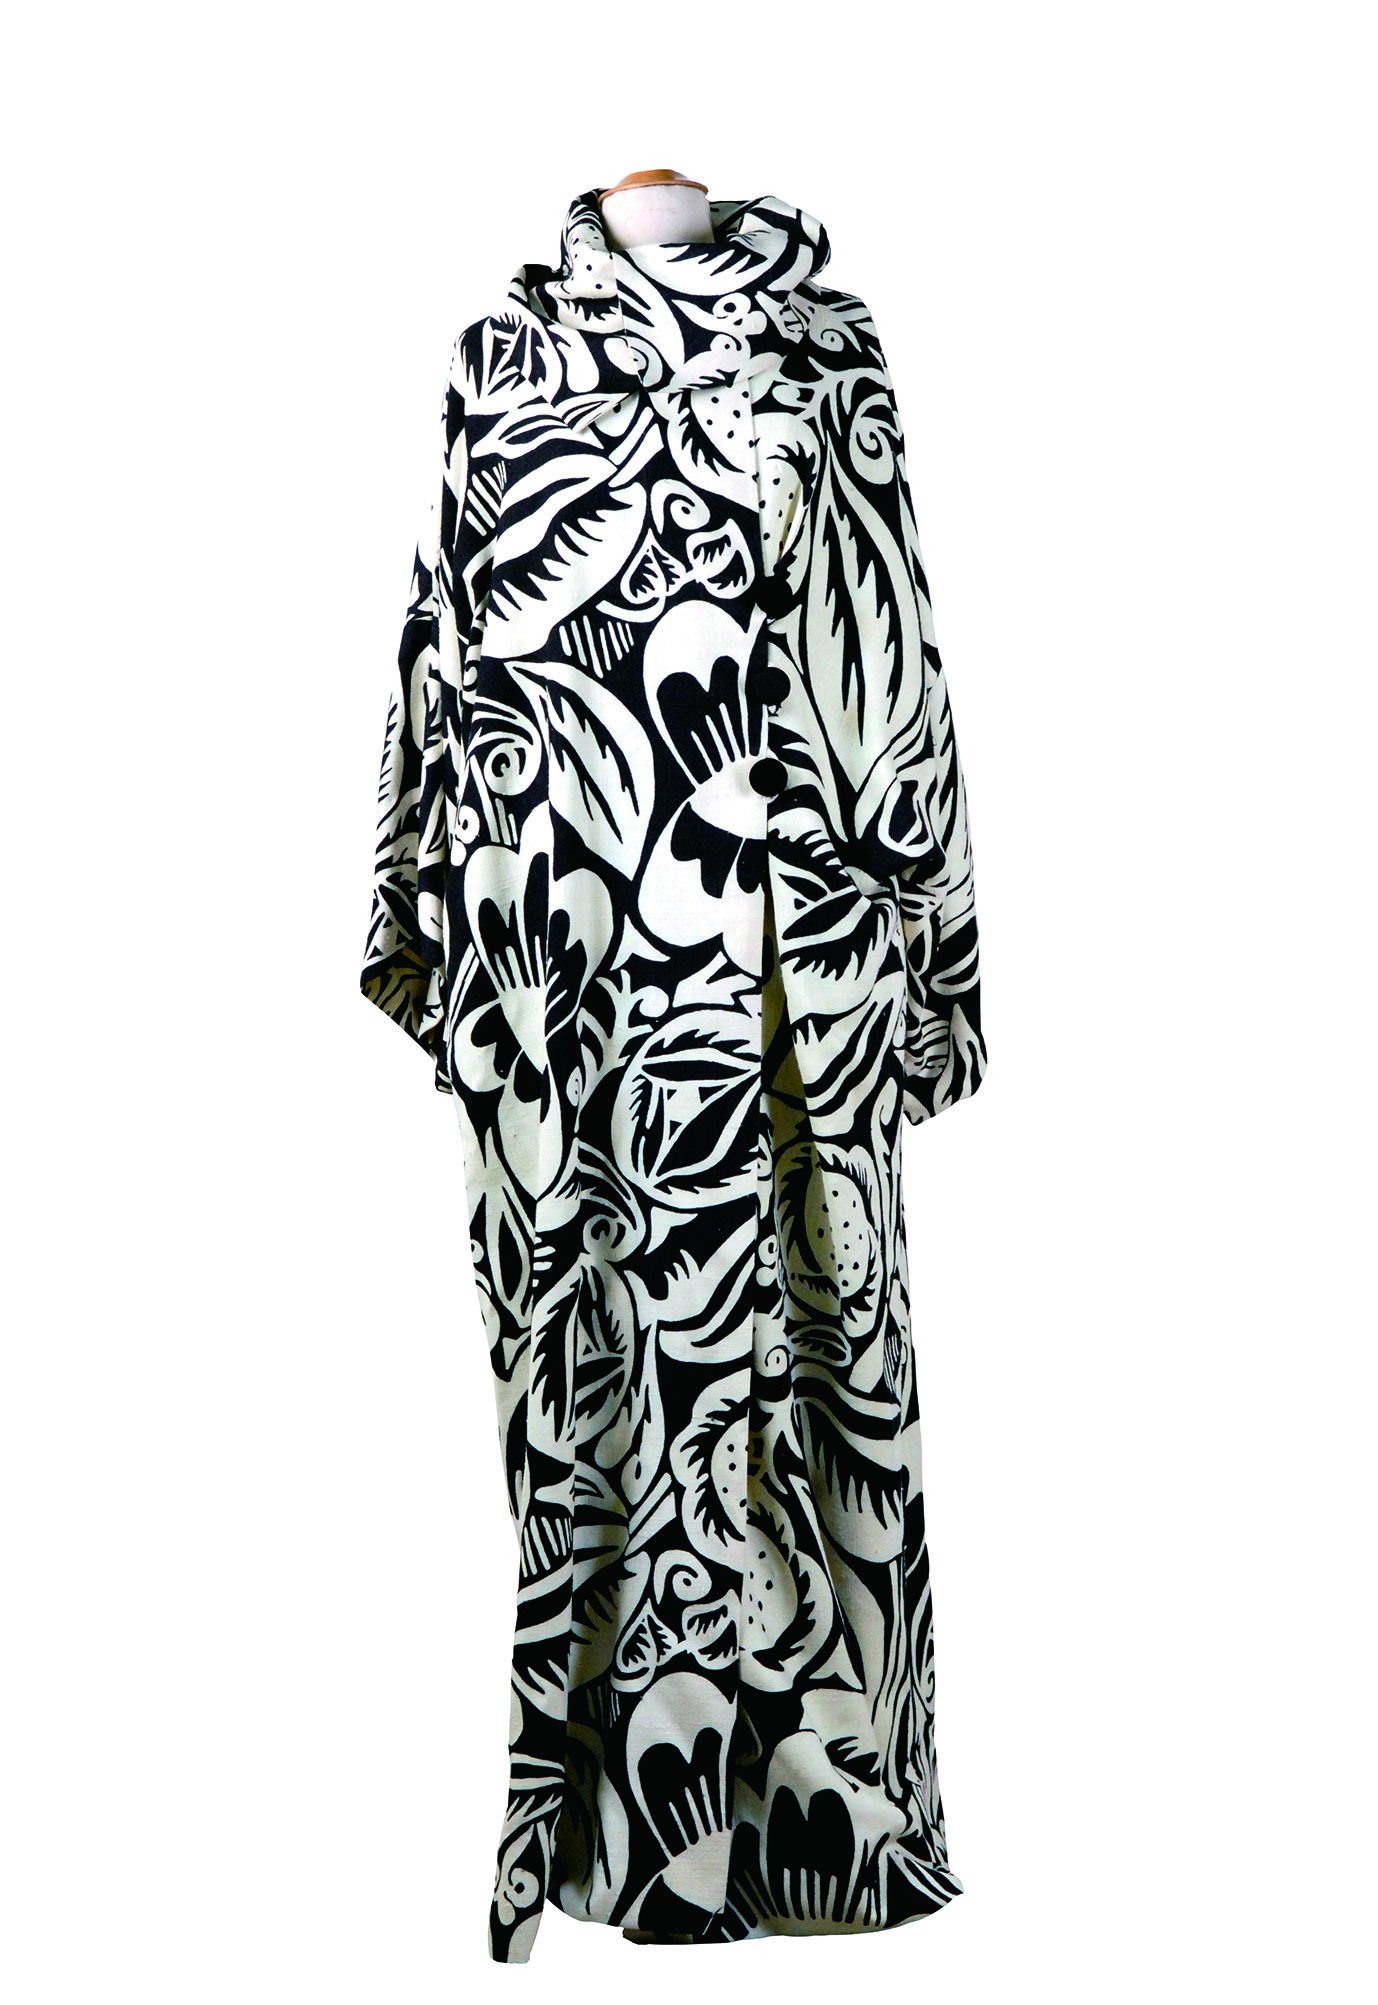 イヴニング・コート《ペルシア》 ドレス・デザイン原案 ポール・ポワレ（1911年）制作 モンジ・ギバン 2007年 絹 デュフィ・ビアンキーニ蔵